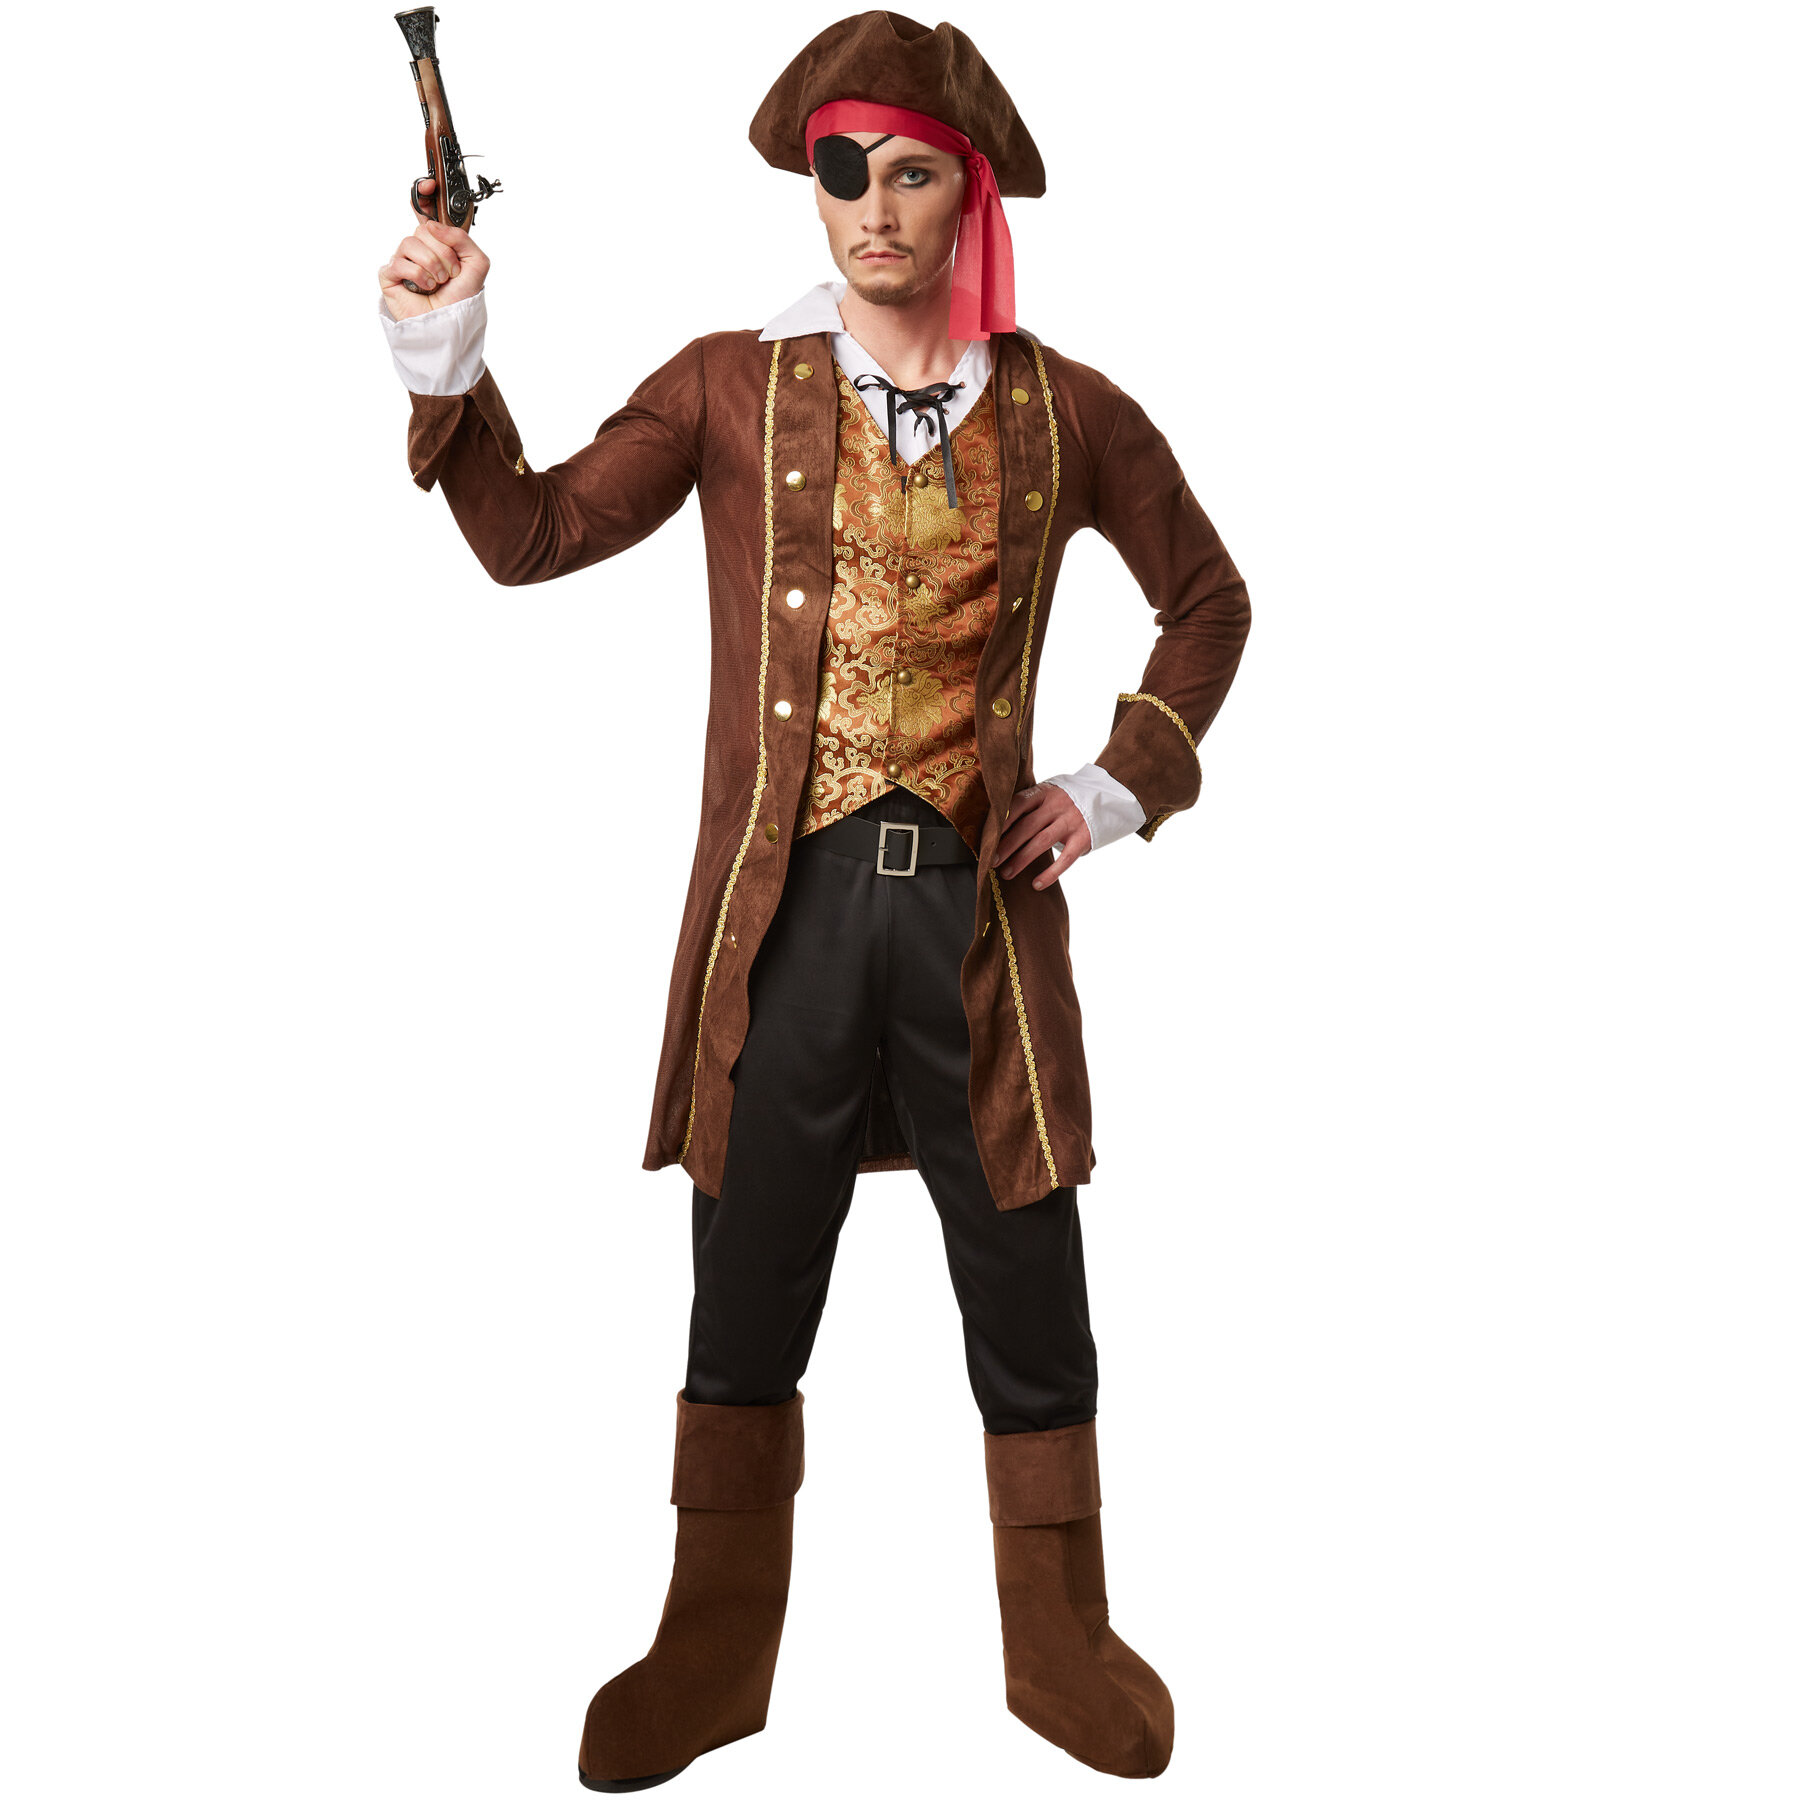 tectake Menas Pirate King Costume - XL